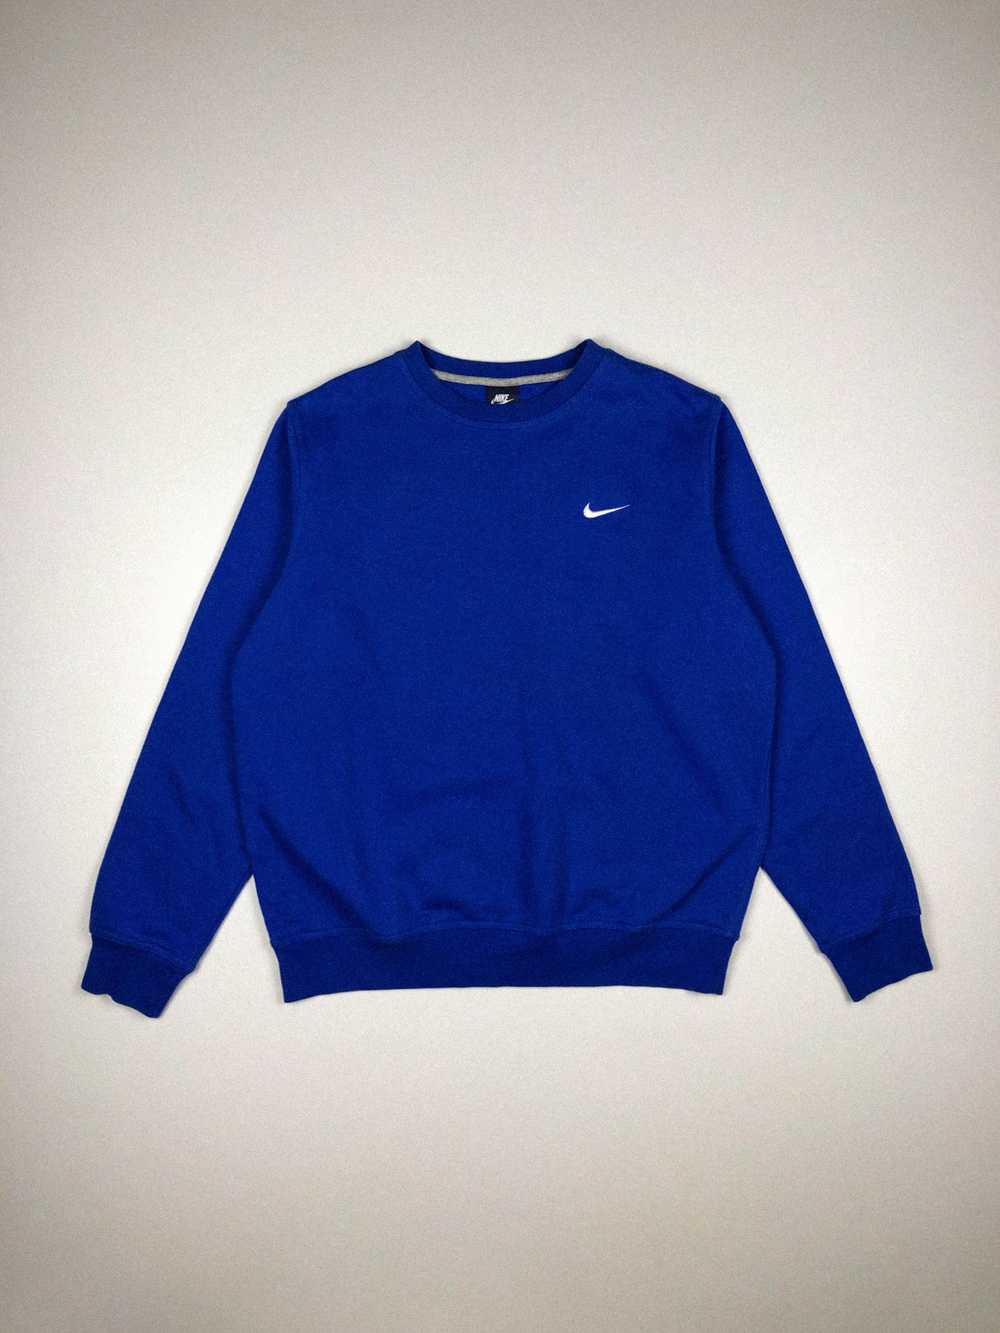 Nike × Vintage Vintage Nike Blue Sweatshirt - image 2